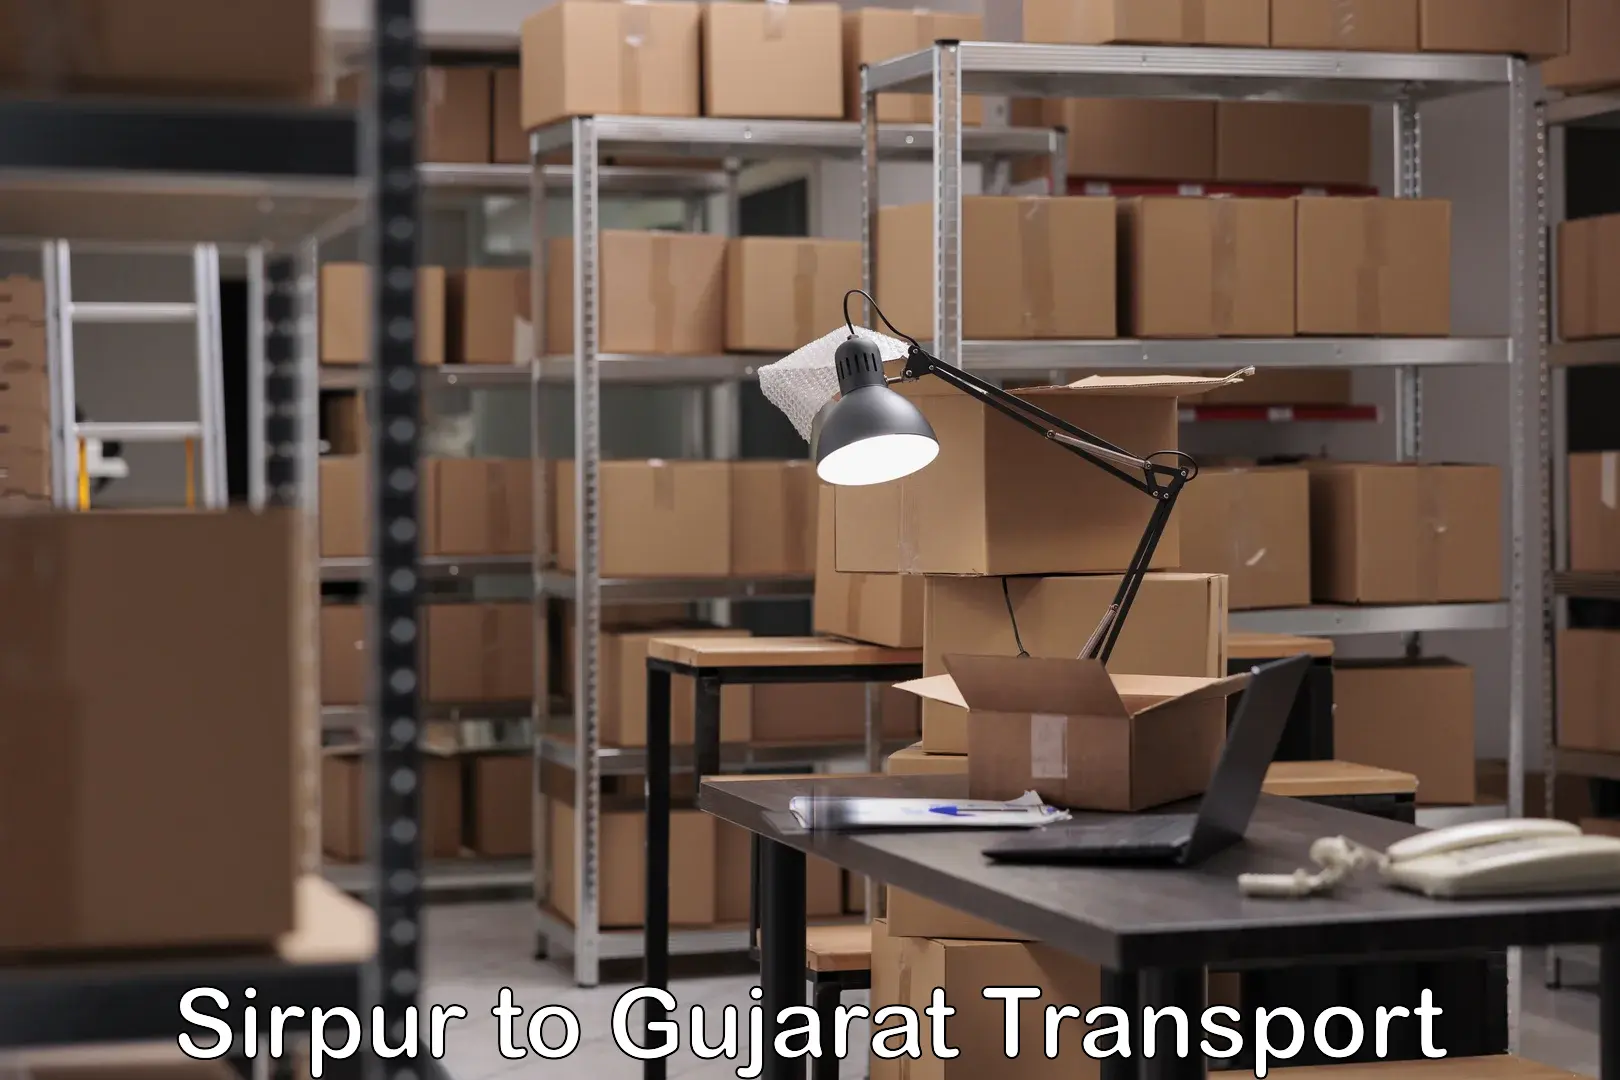 Bike shipping service Sirpur to Gujarat